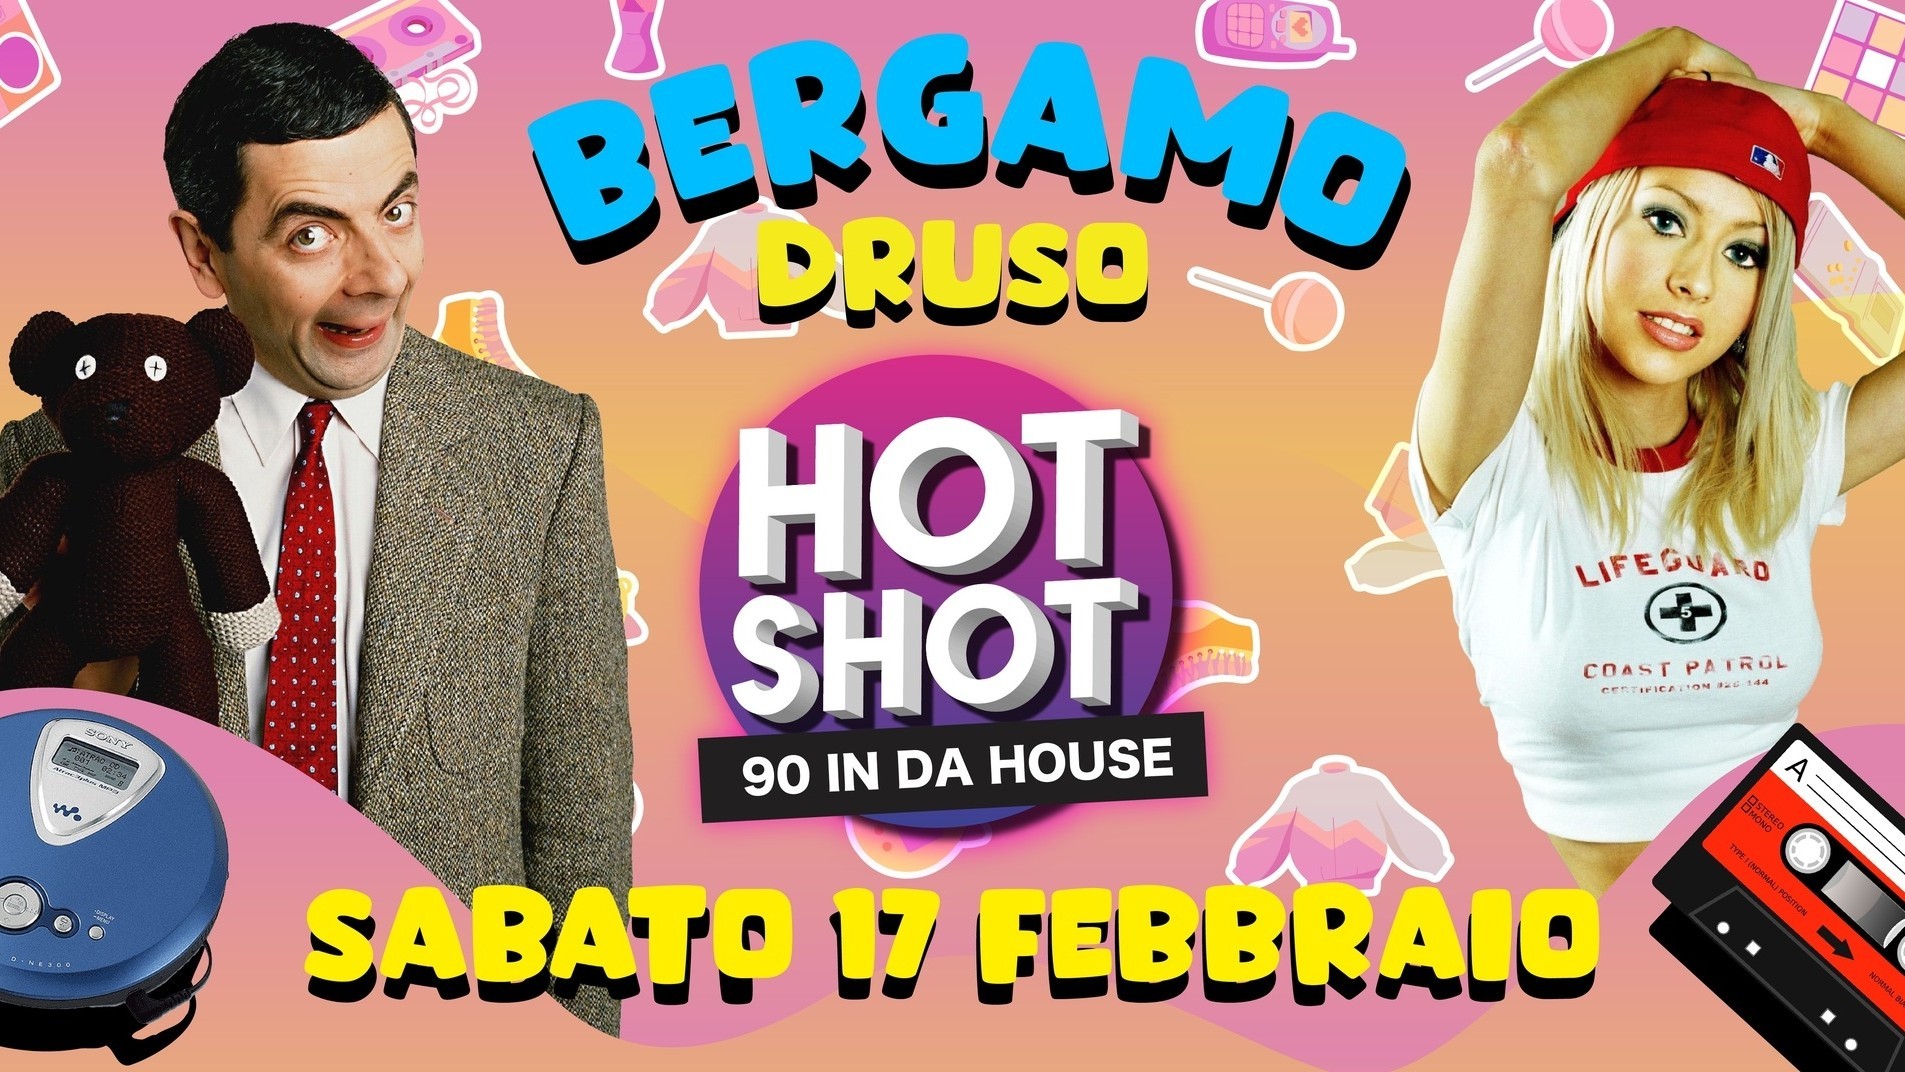 Hot Shot - 90 in da house